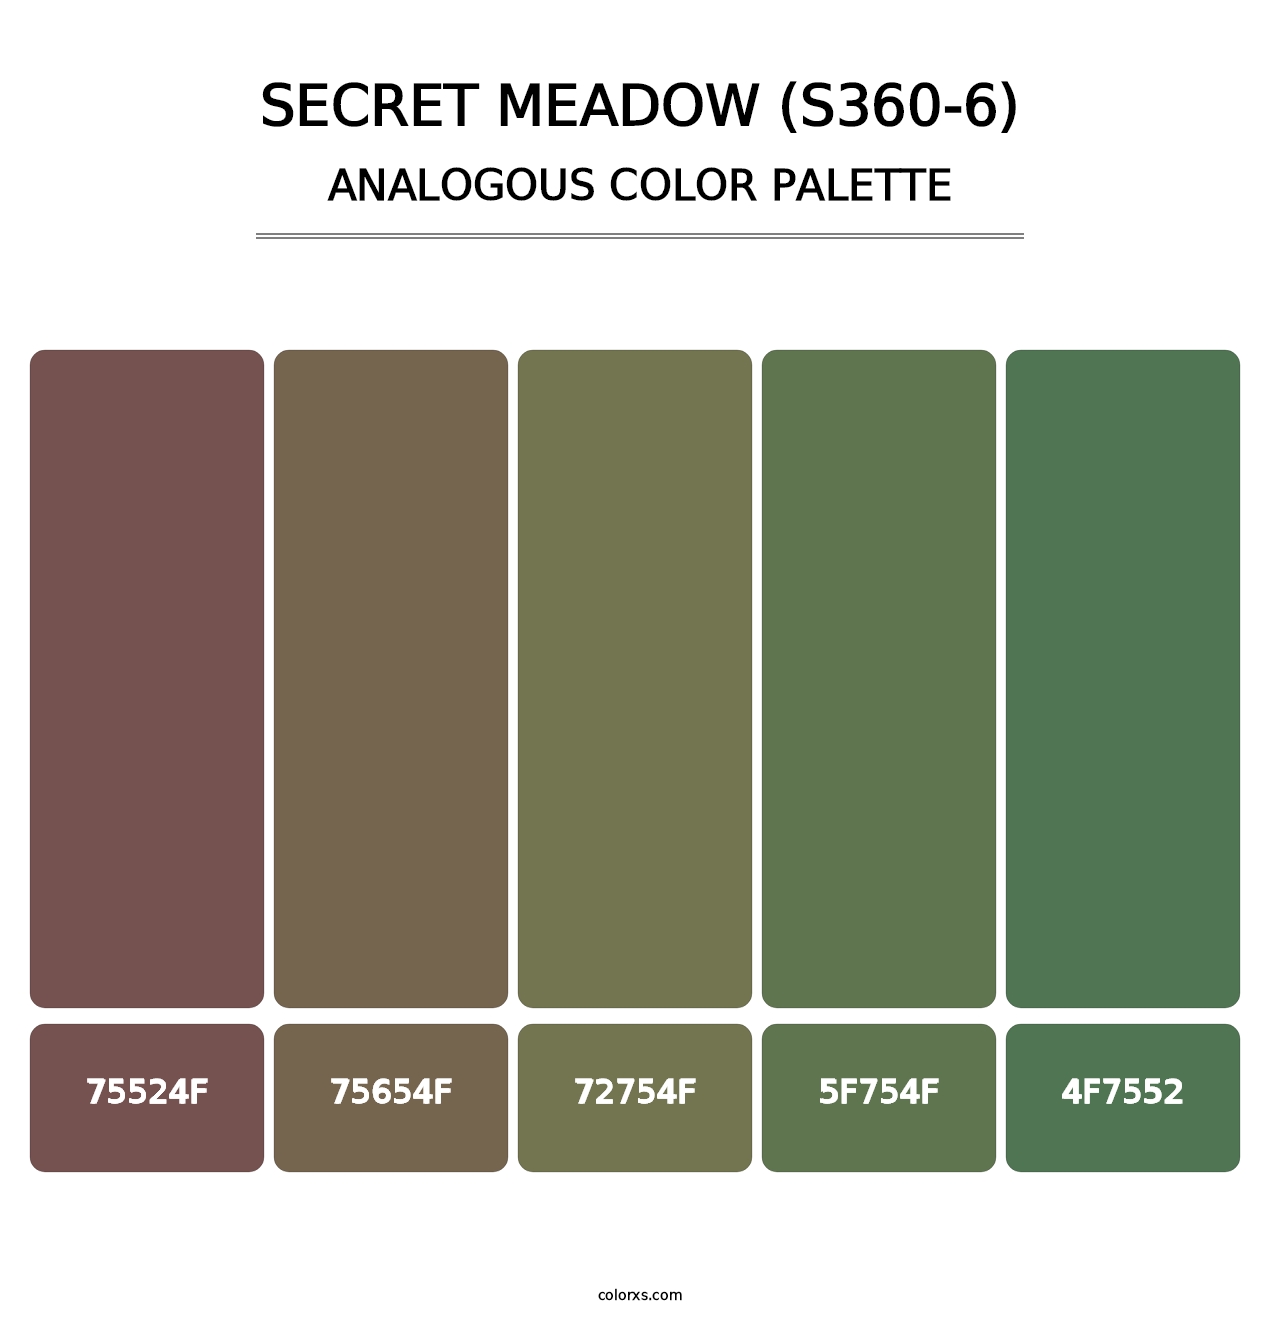 Secret Meadow (S360-6) - Analogous Color Palette